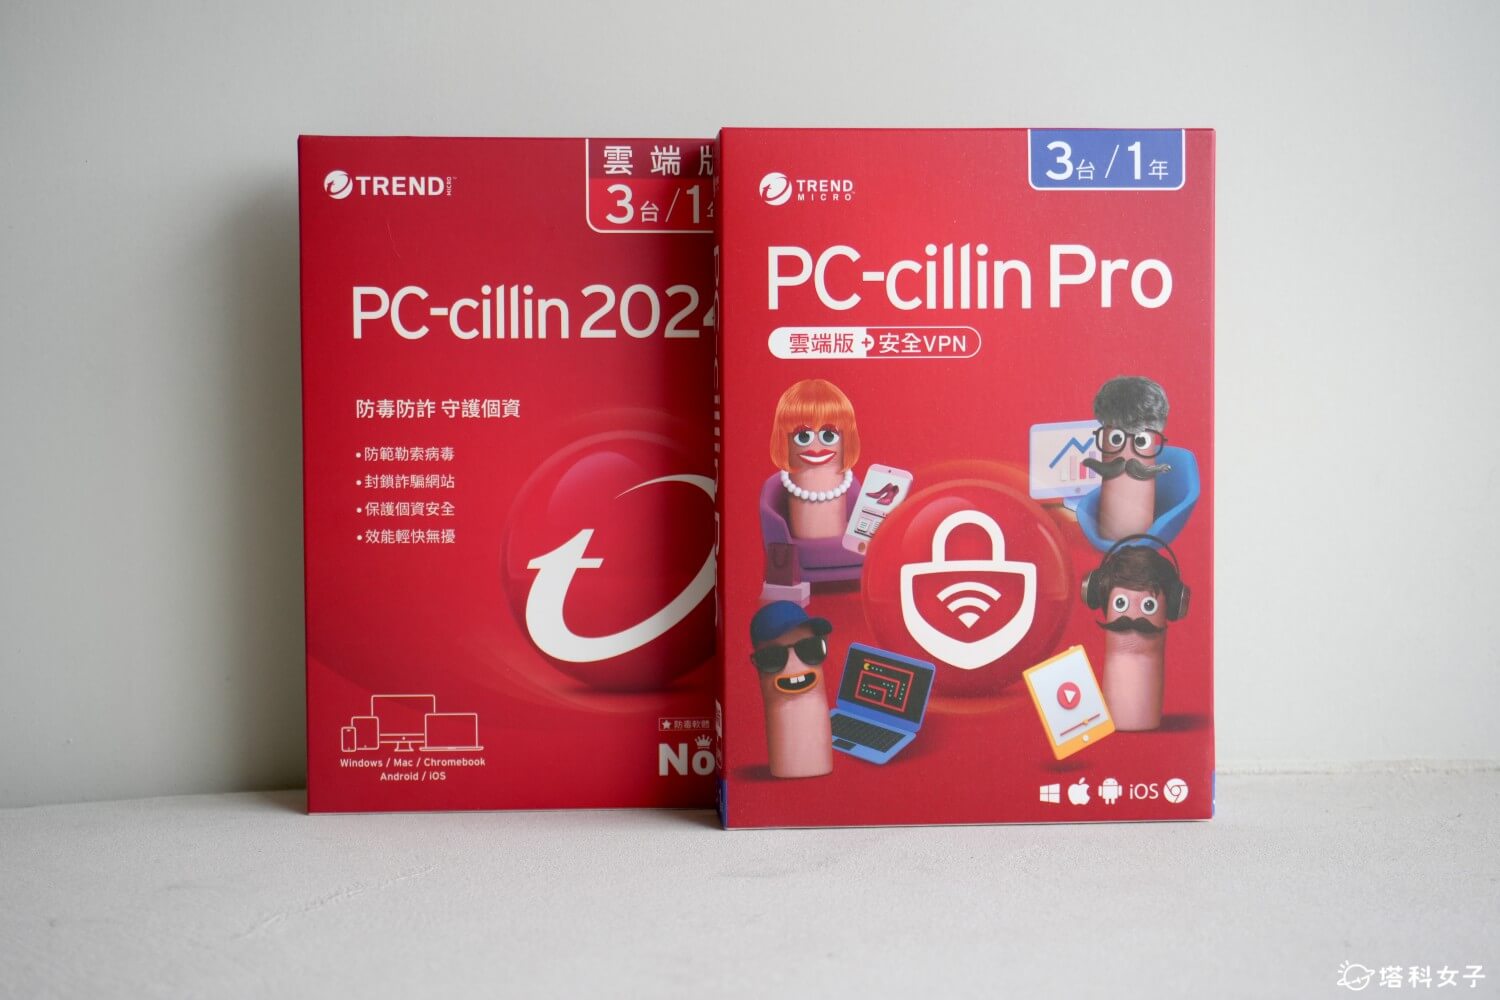 PC-cillin 2024 vs PC-cillin Pro 差異比較